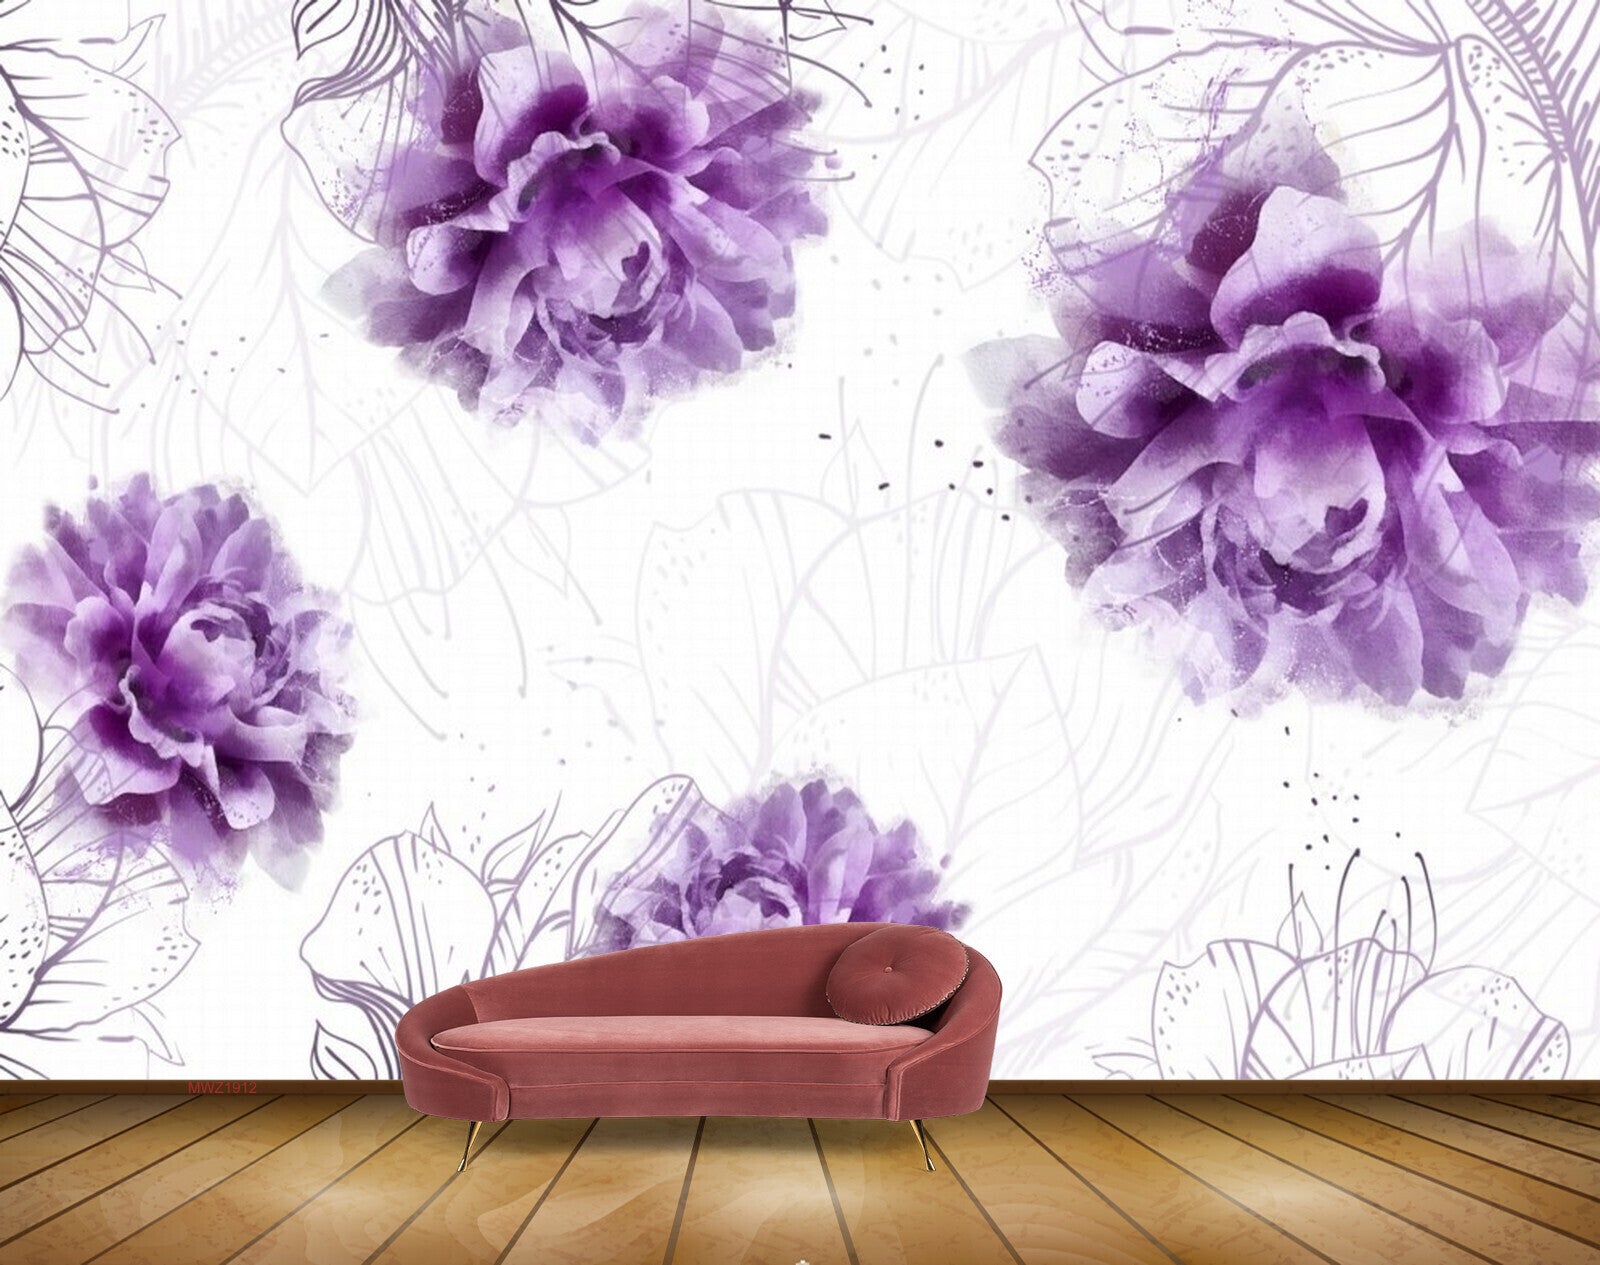 Purple Flowers Aesthetic wallpaper  Purple flowers wallpaper Purple  glitter wallpaper Flower aesthetic